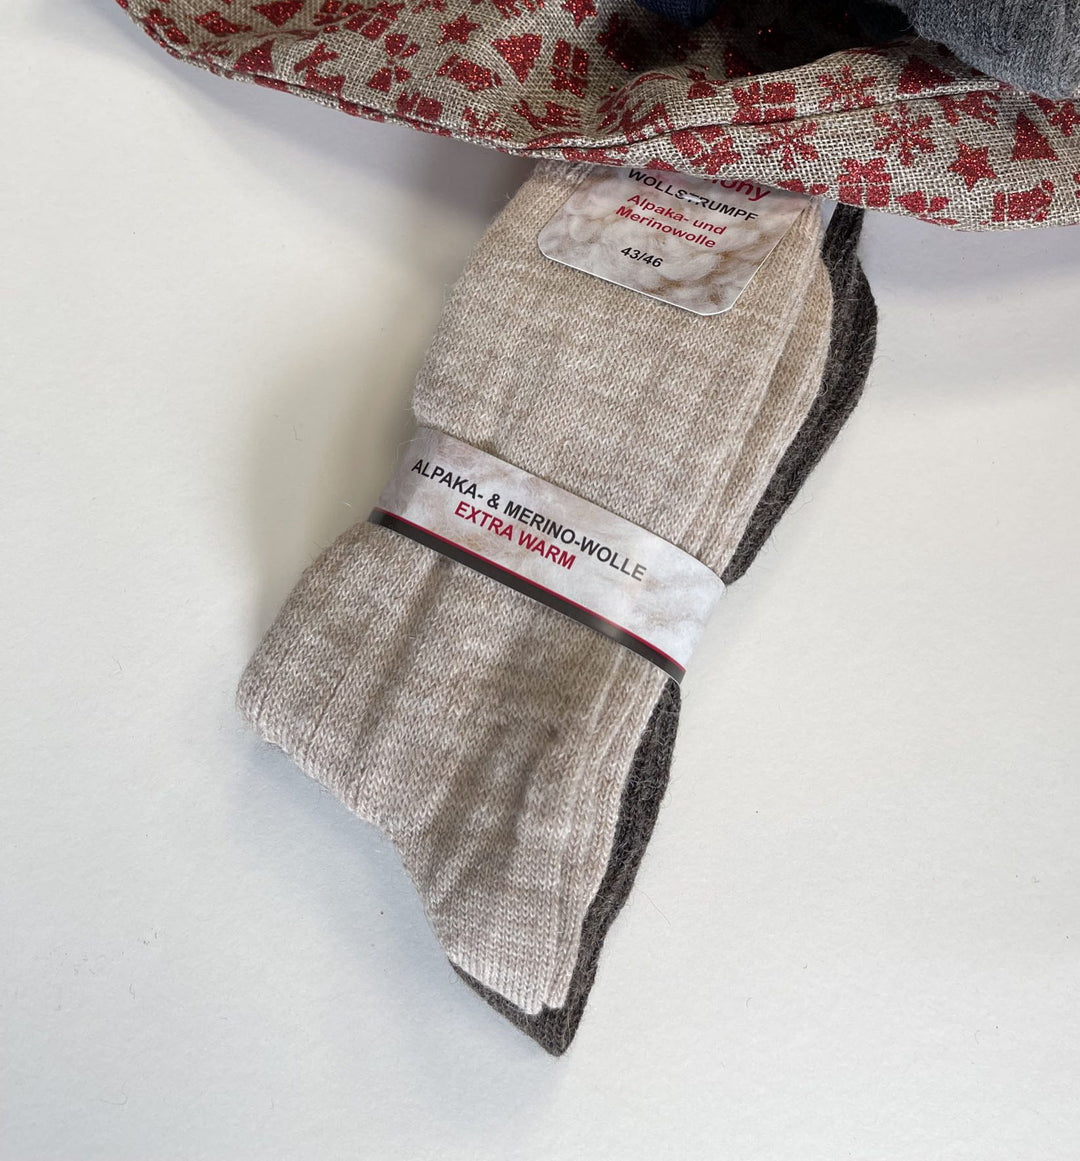 Socken aus Alpaka und Merino - hellbeige und braun - 2 Paar